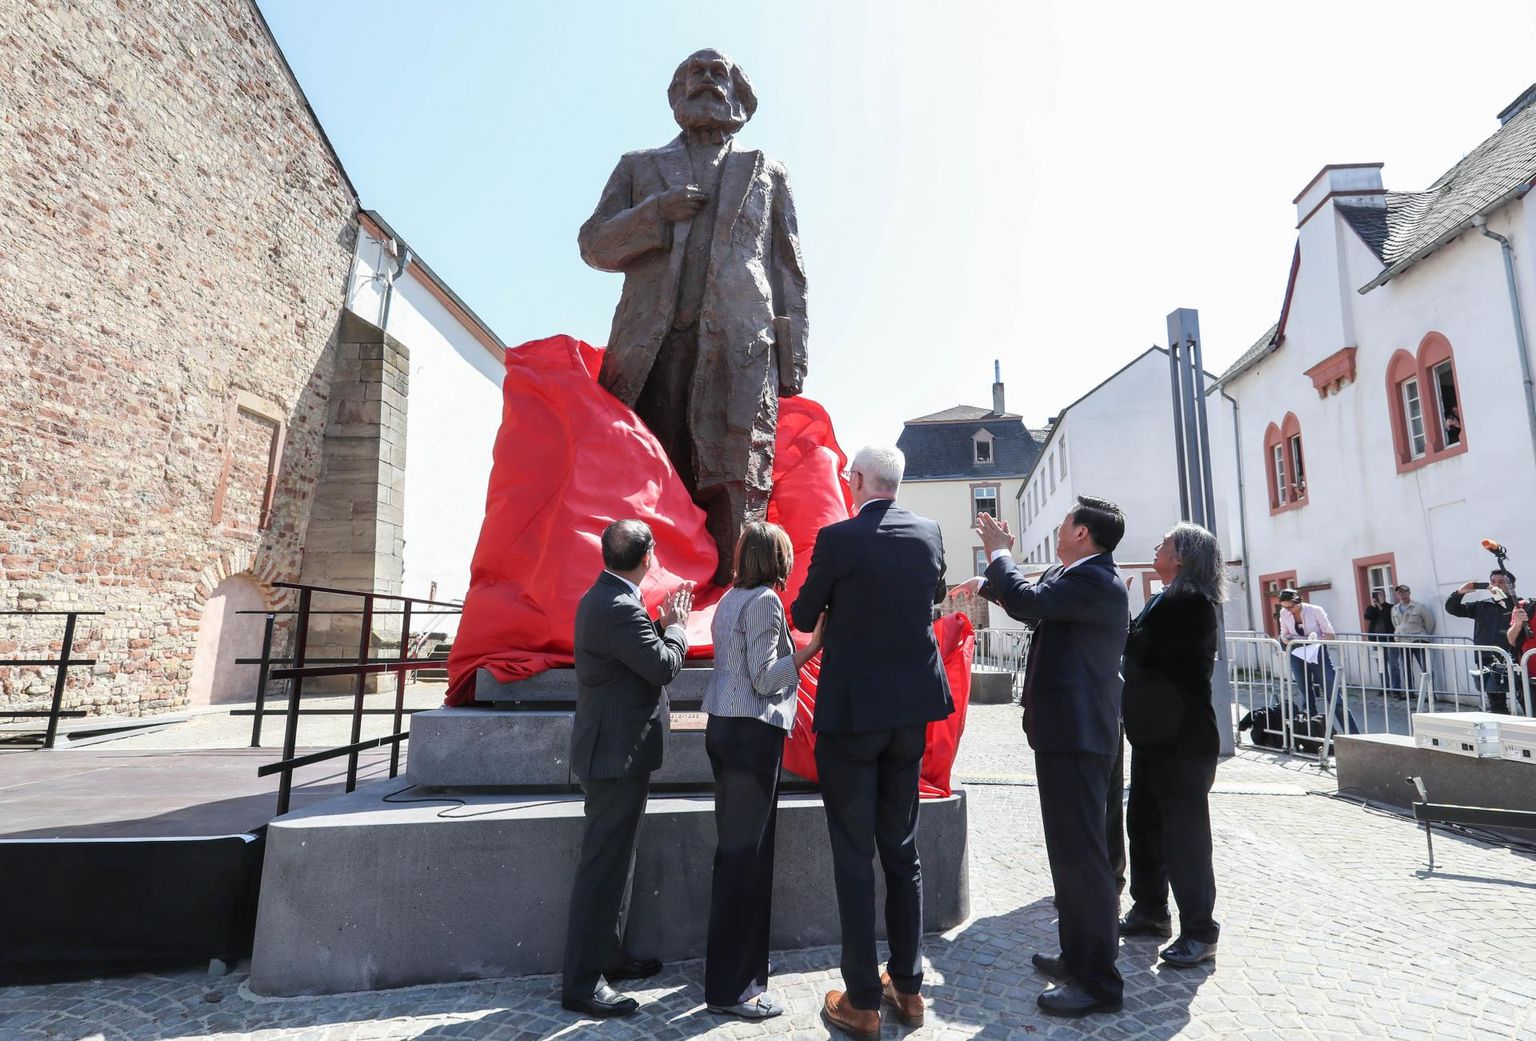 Tänavu tähistatud Karl Marxi 200. sünniaastapäeva puhul kinkis Hiina Rahvavabariik filosoofi sünnilinnale Trierile Saksamaal pronkskuju.